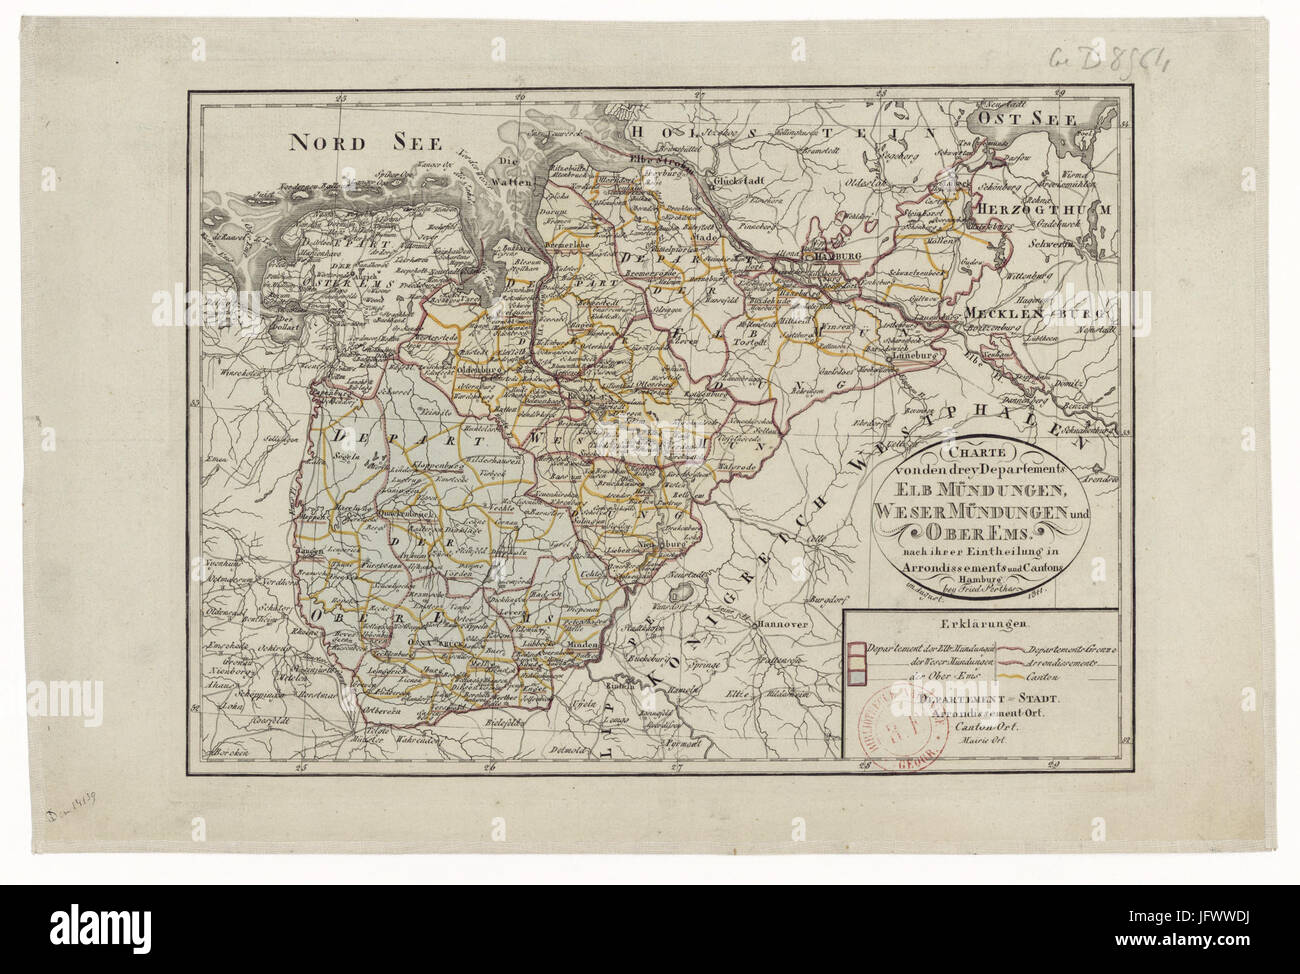 Charte von den drey departements - Elb Mündungen, Weser Mündtengen und Ober Ems - 1811 - btv1b84589357 Stock Photo